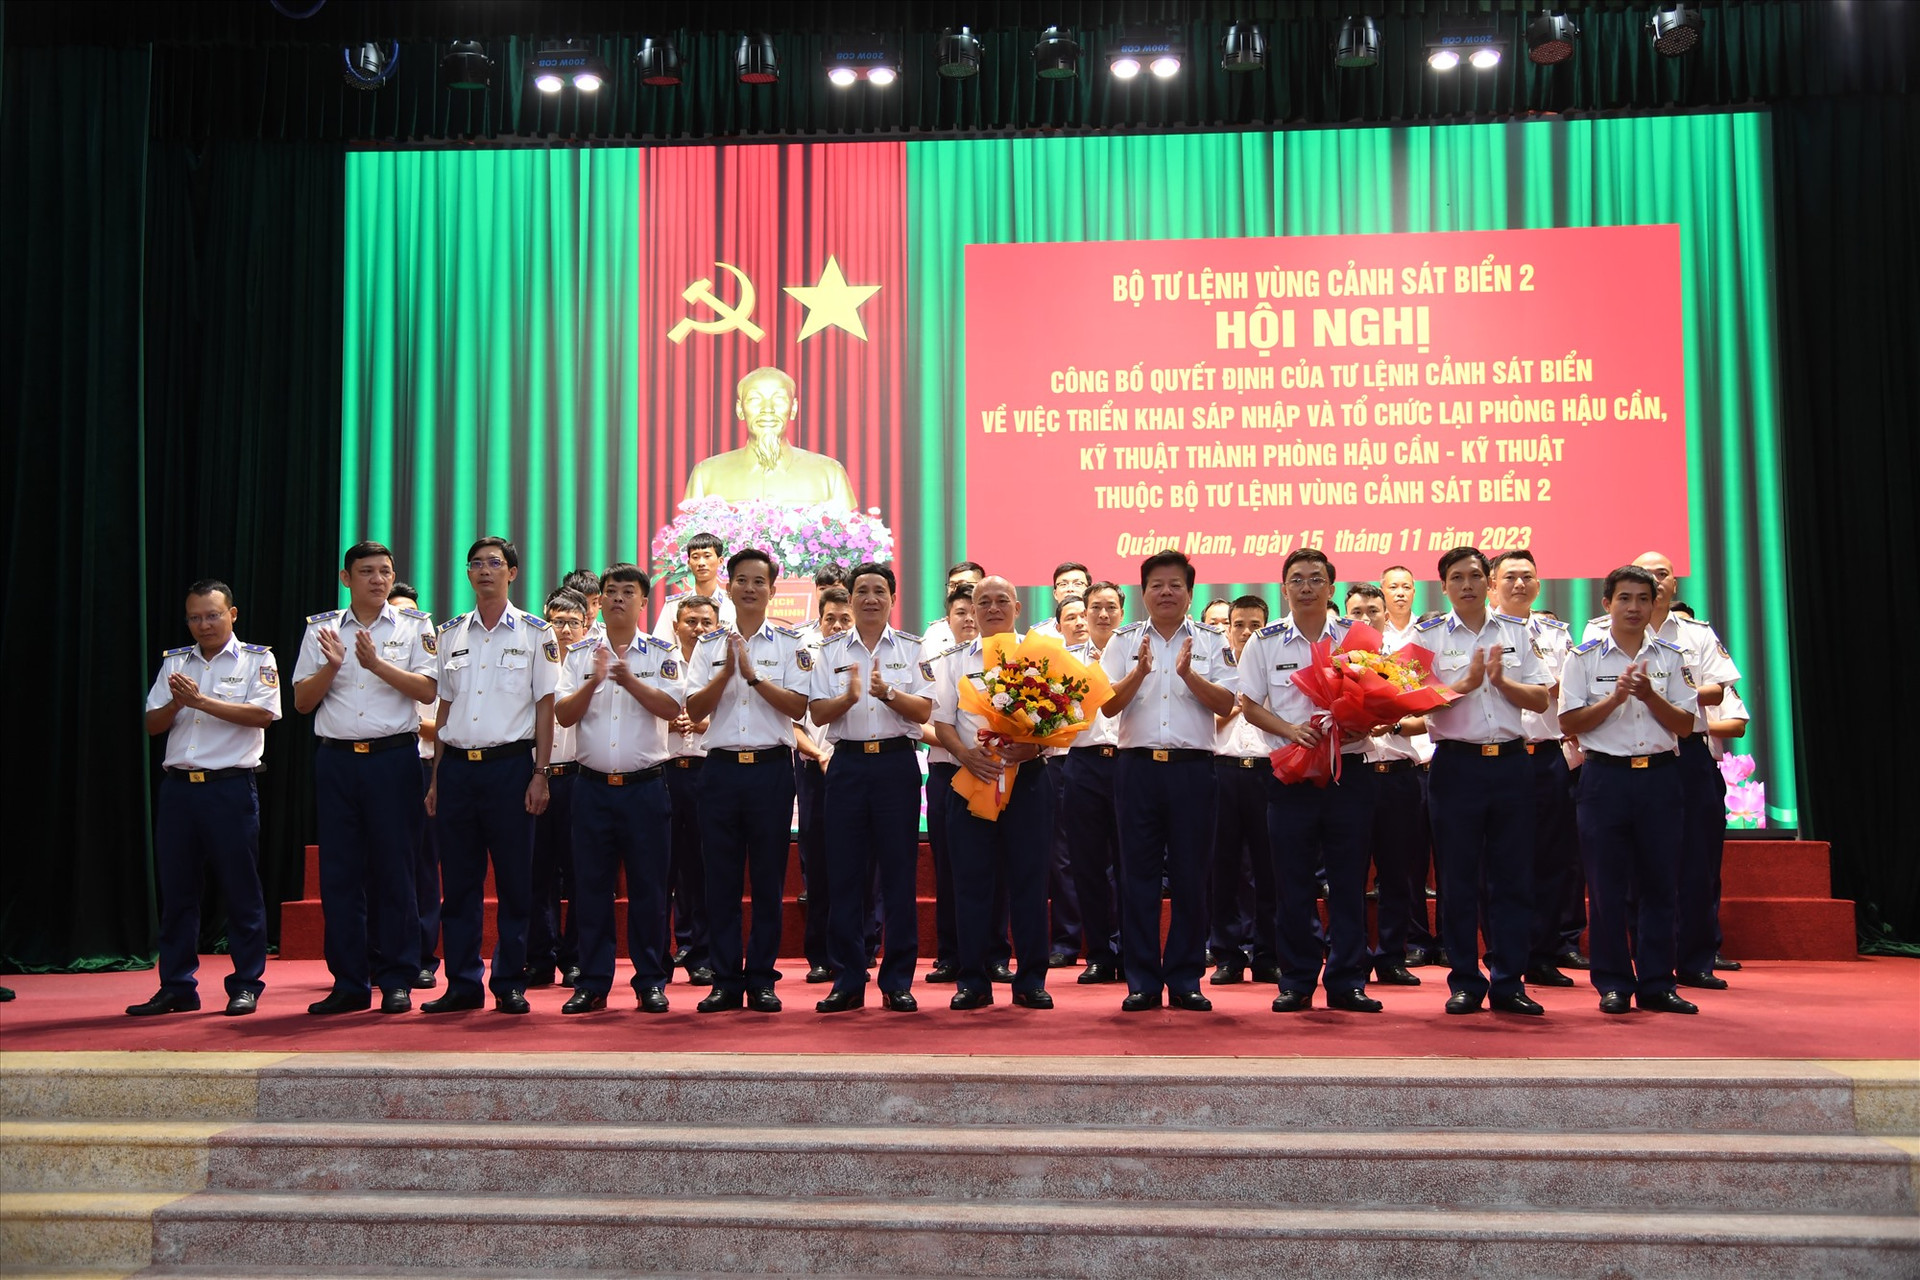 Lãnh đạo Bộ Tư lệnh Vùng Cảnh sát biển 2 tặng hoa cho cán bộ, chiến sĩ Phòng Hậu cần - kỹ thuật sau khi sáp nhập